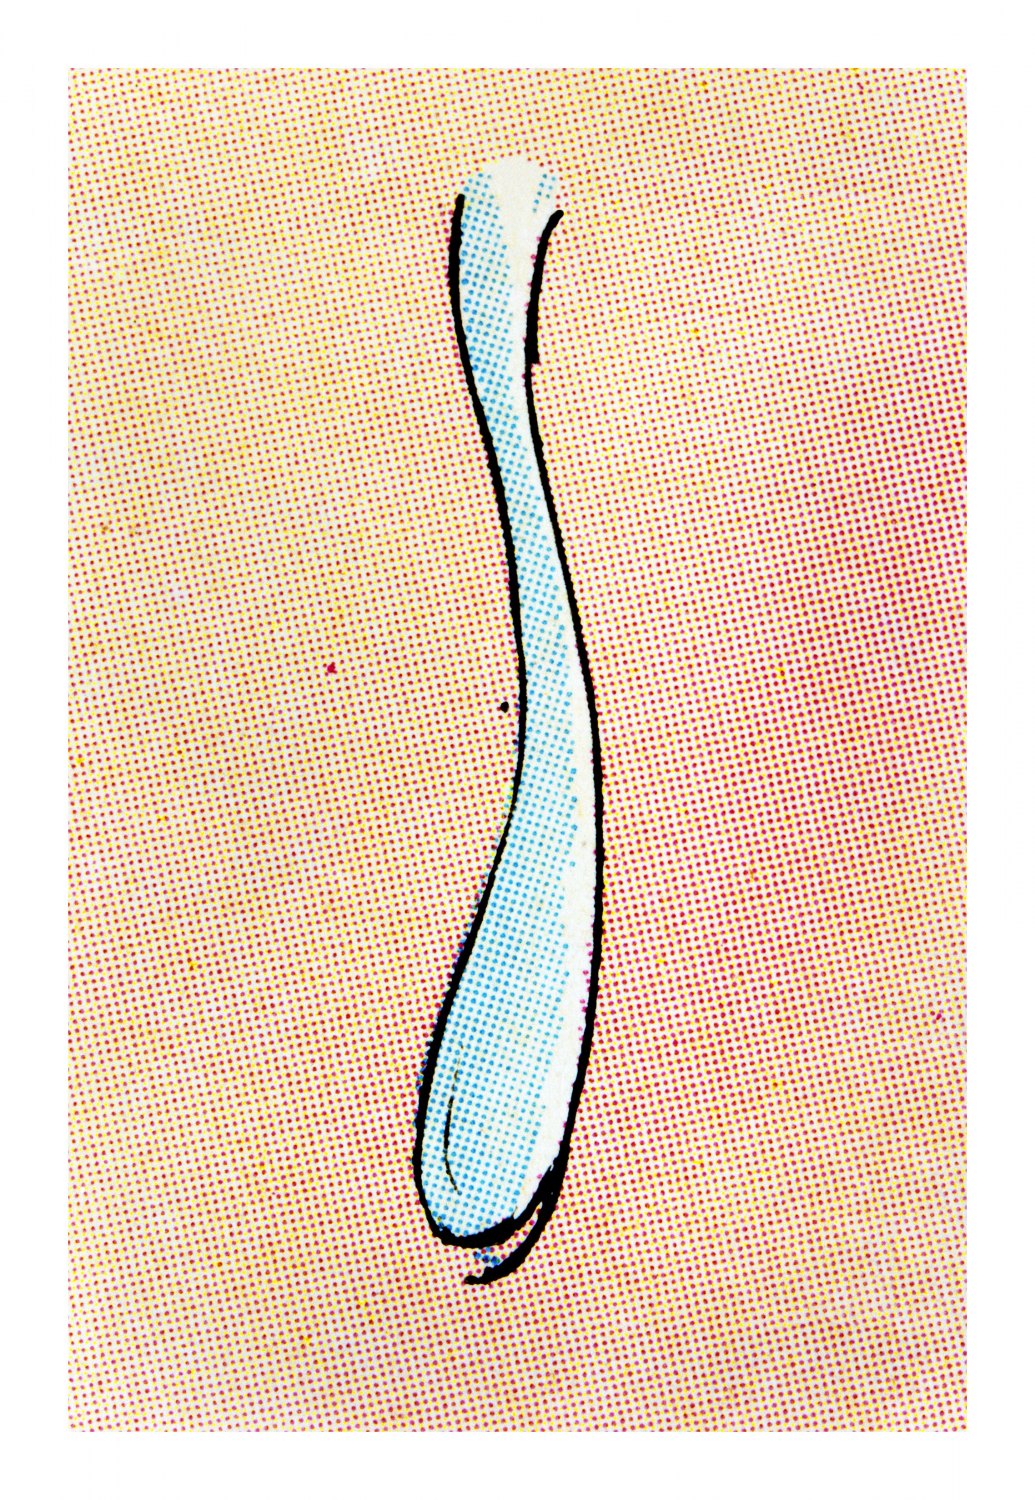 Anne Collier Tear (Comic) #2, 2018 C-print, 186 x 126 cm